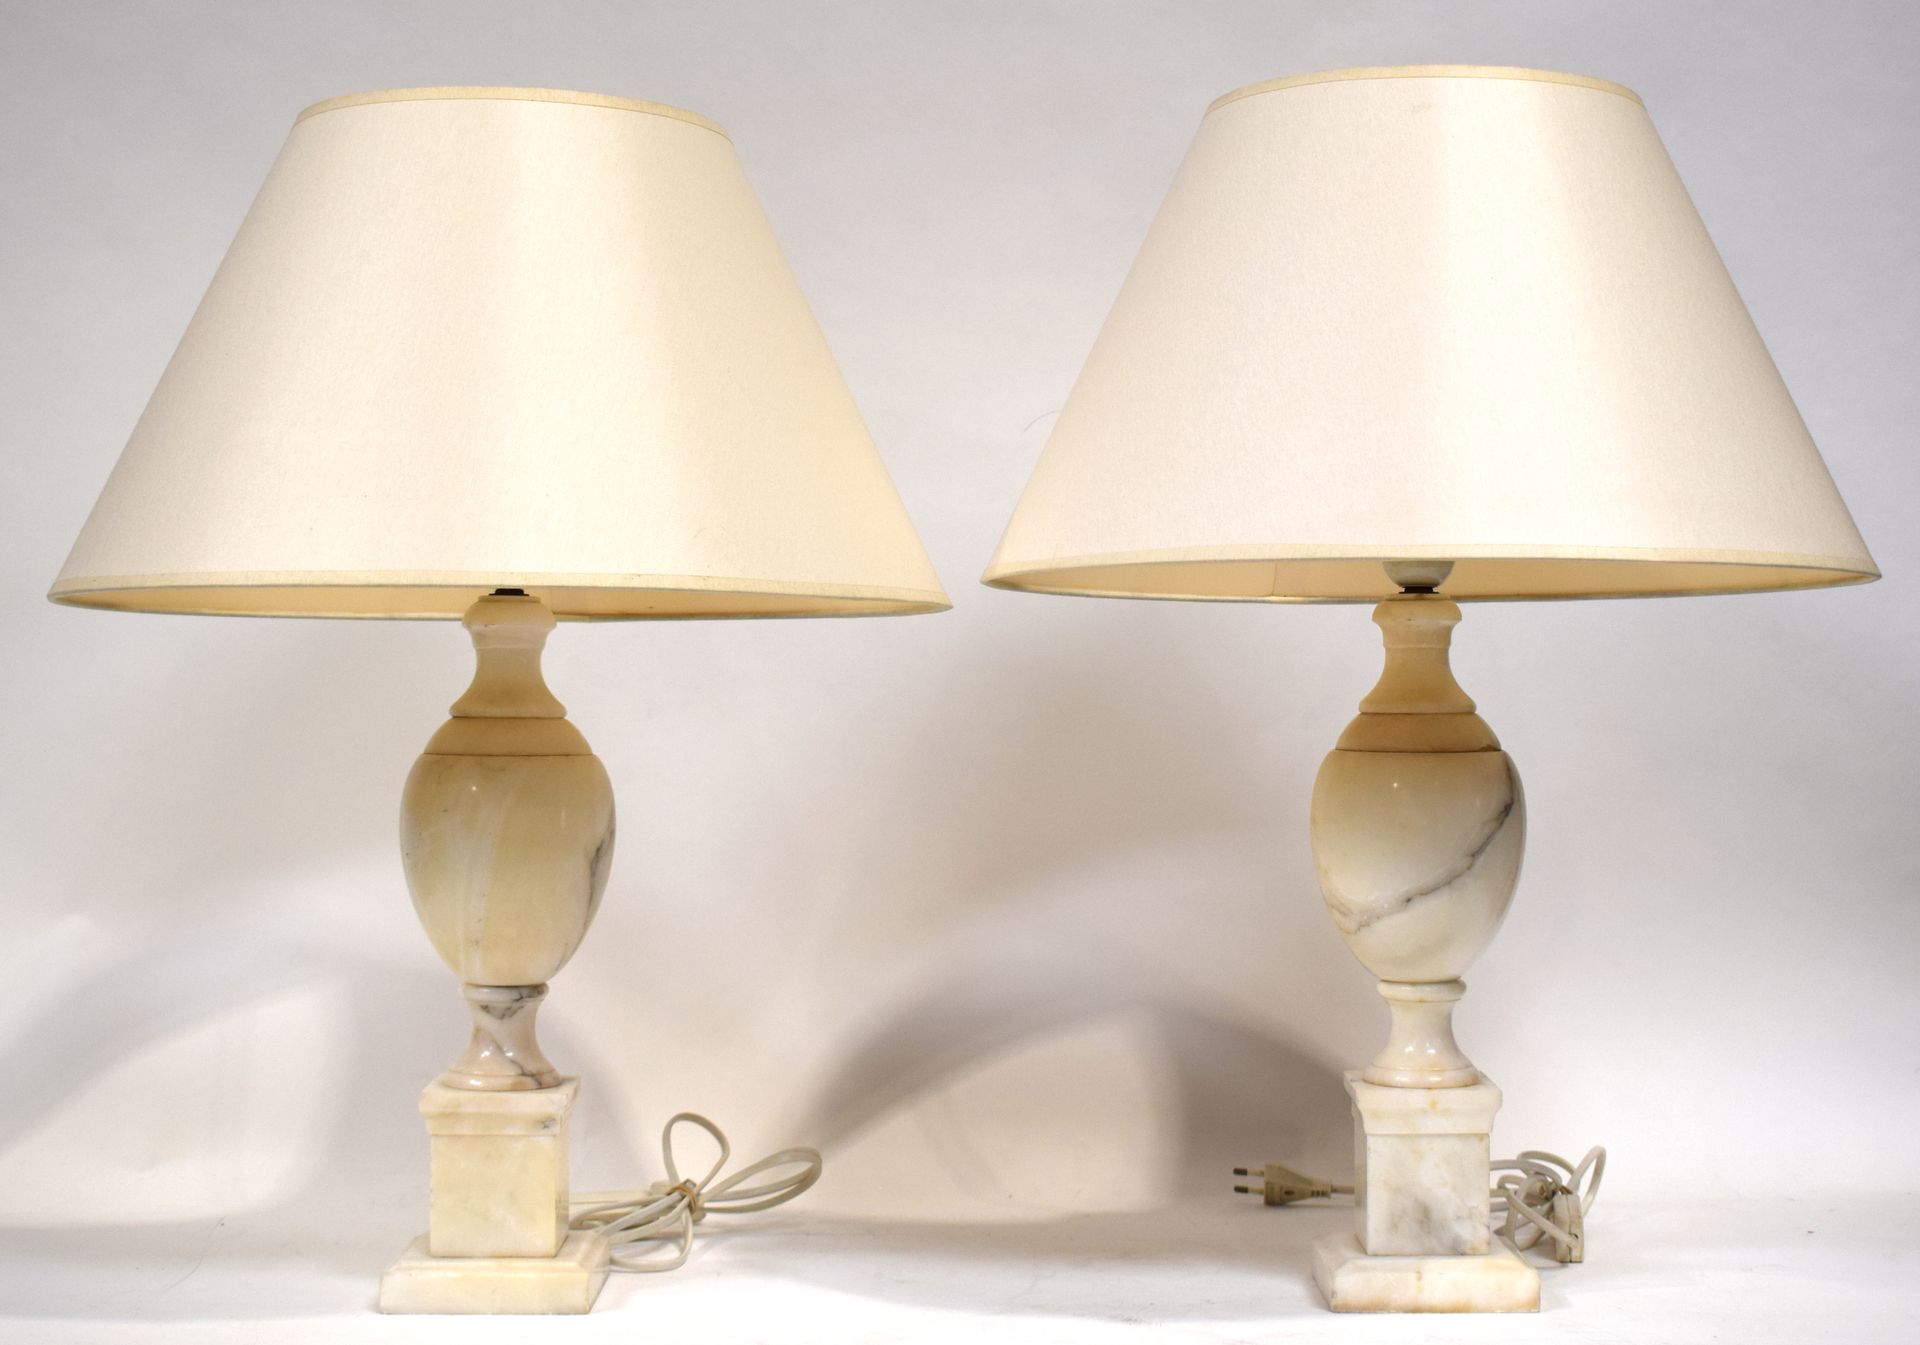 Null (LAMPE) Paire de lampes en albâtre marbré blanc, hauteur : 35 cm

|

(LAMP)&hellip;